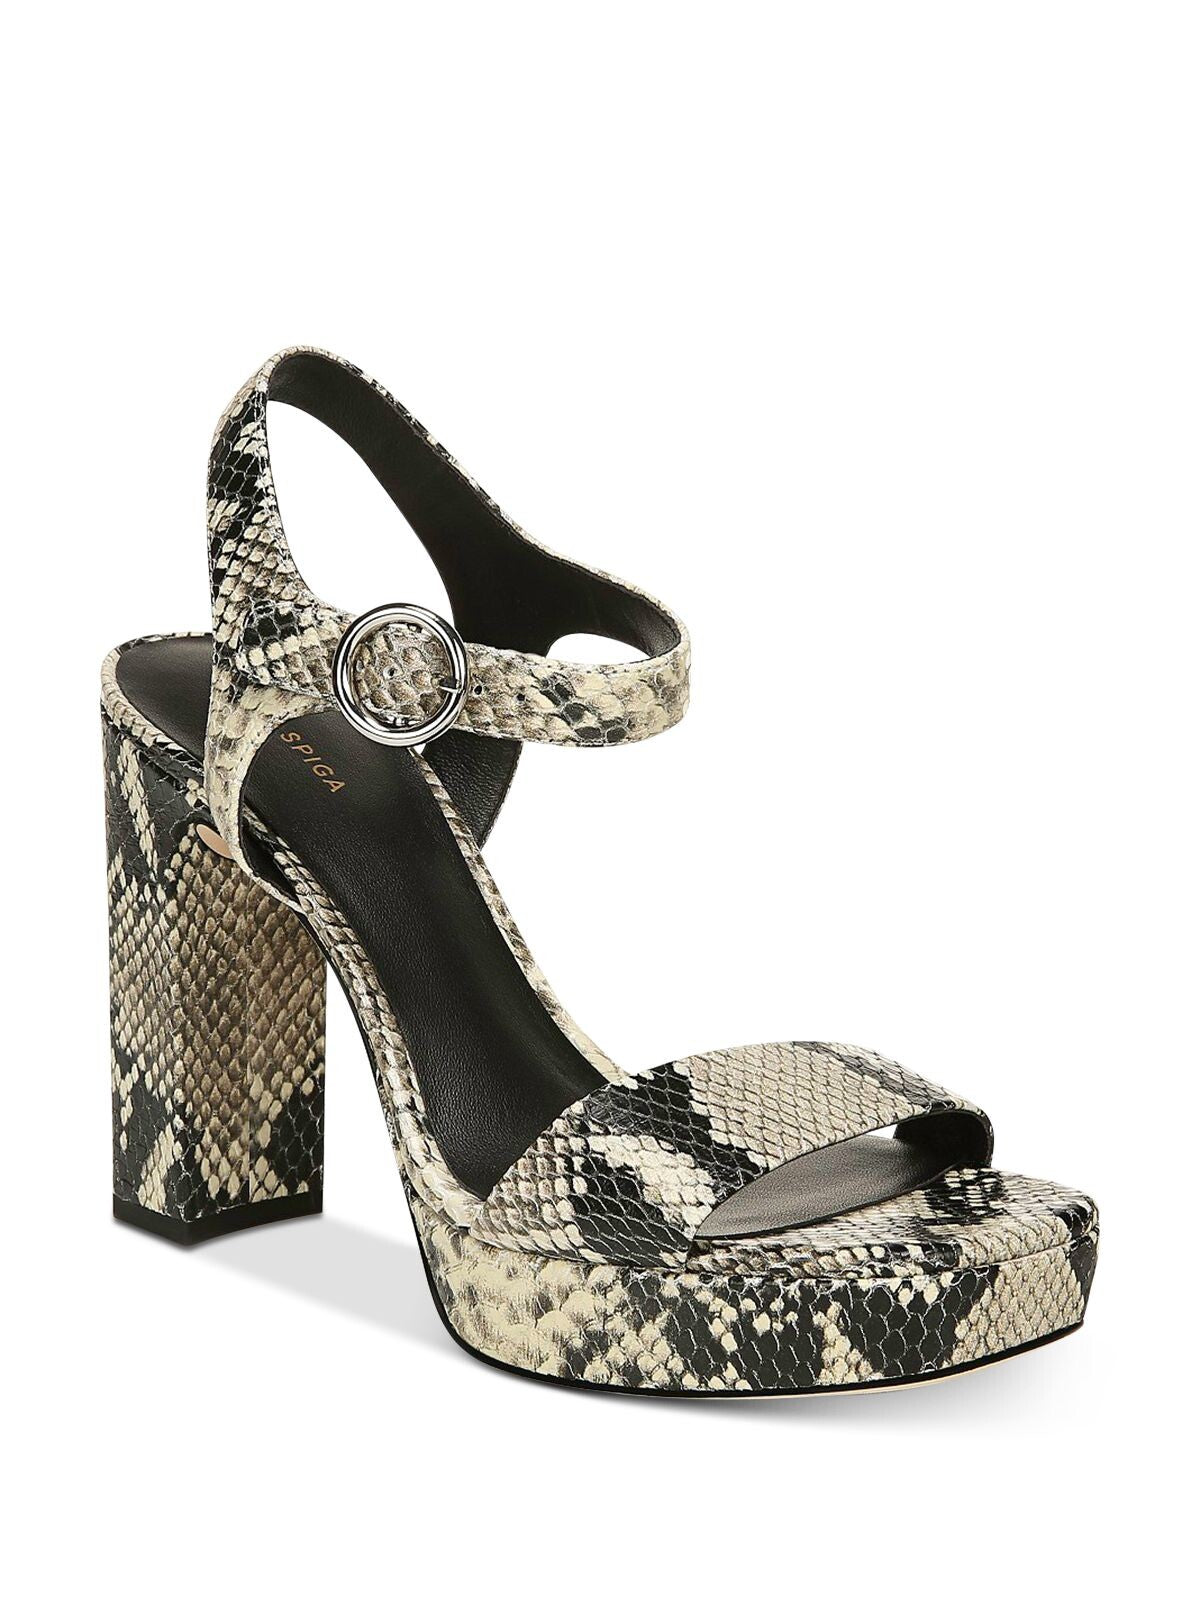 VIA SPIGA Womens Beige Snake Print 1" Platform Ankle Strap Adjustable Saville Square Toe Block Heel Buckle Leather Sandals Shoes 8 M